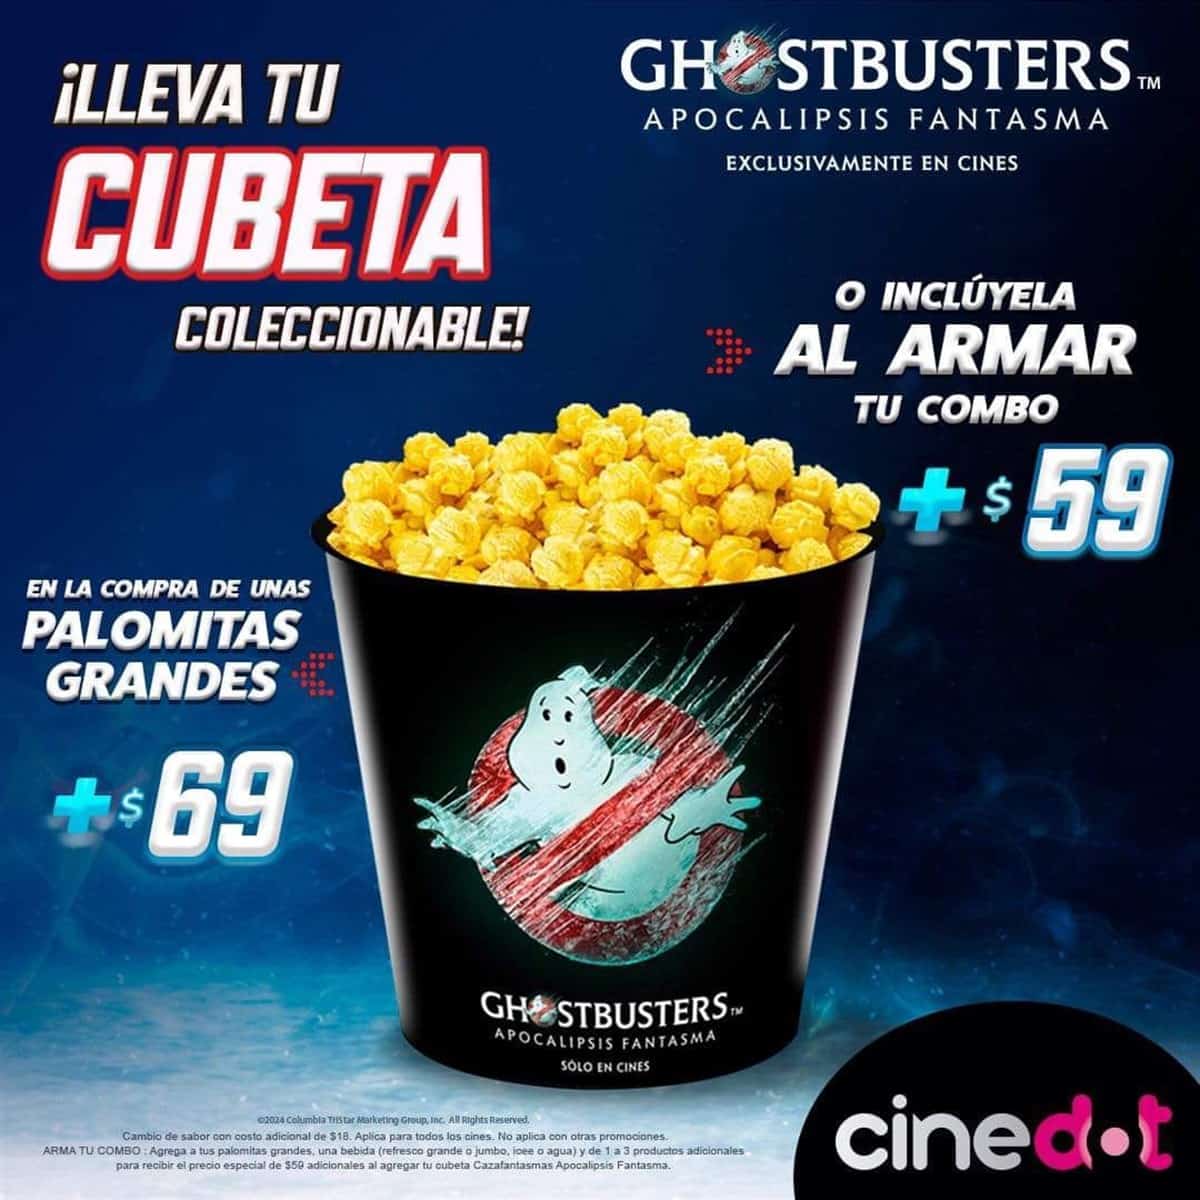 Precio y fecha de venta de la palomera de Ghostbusters: Apocalipsis fantasma en Cinedot